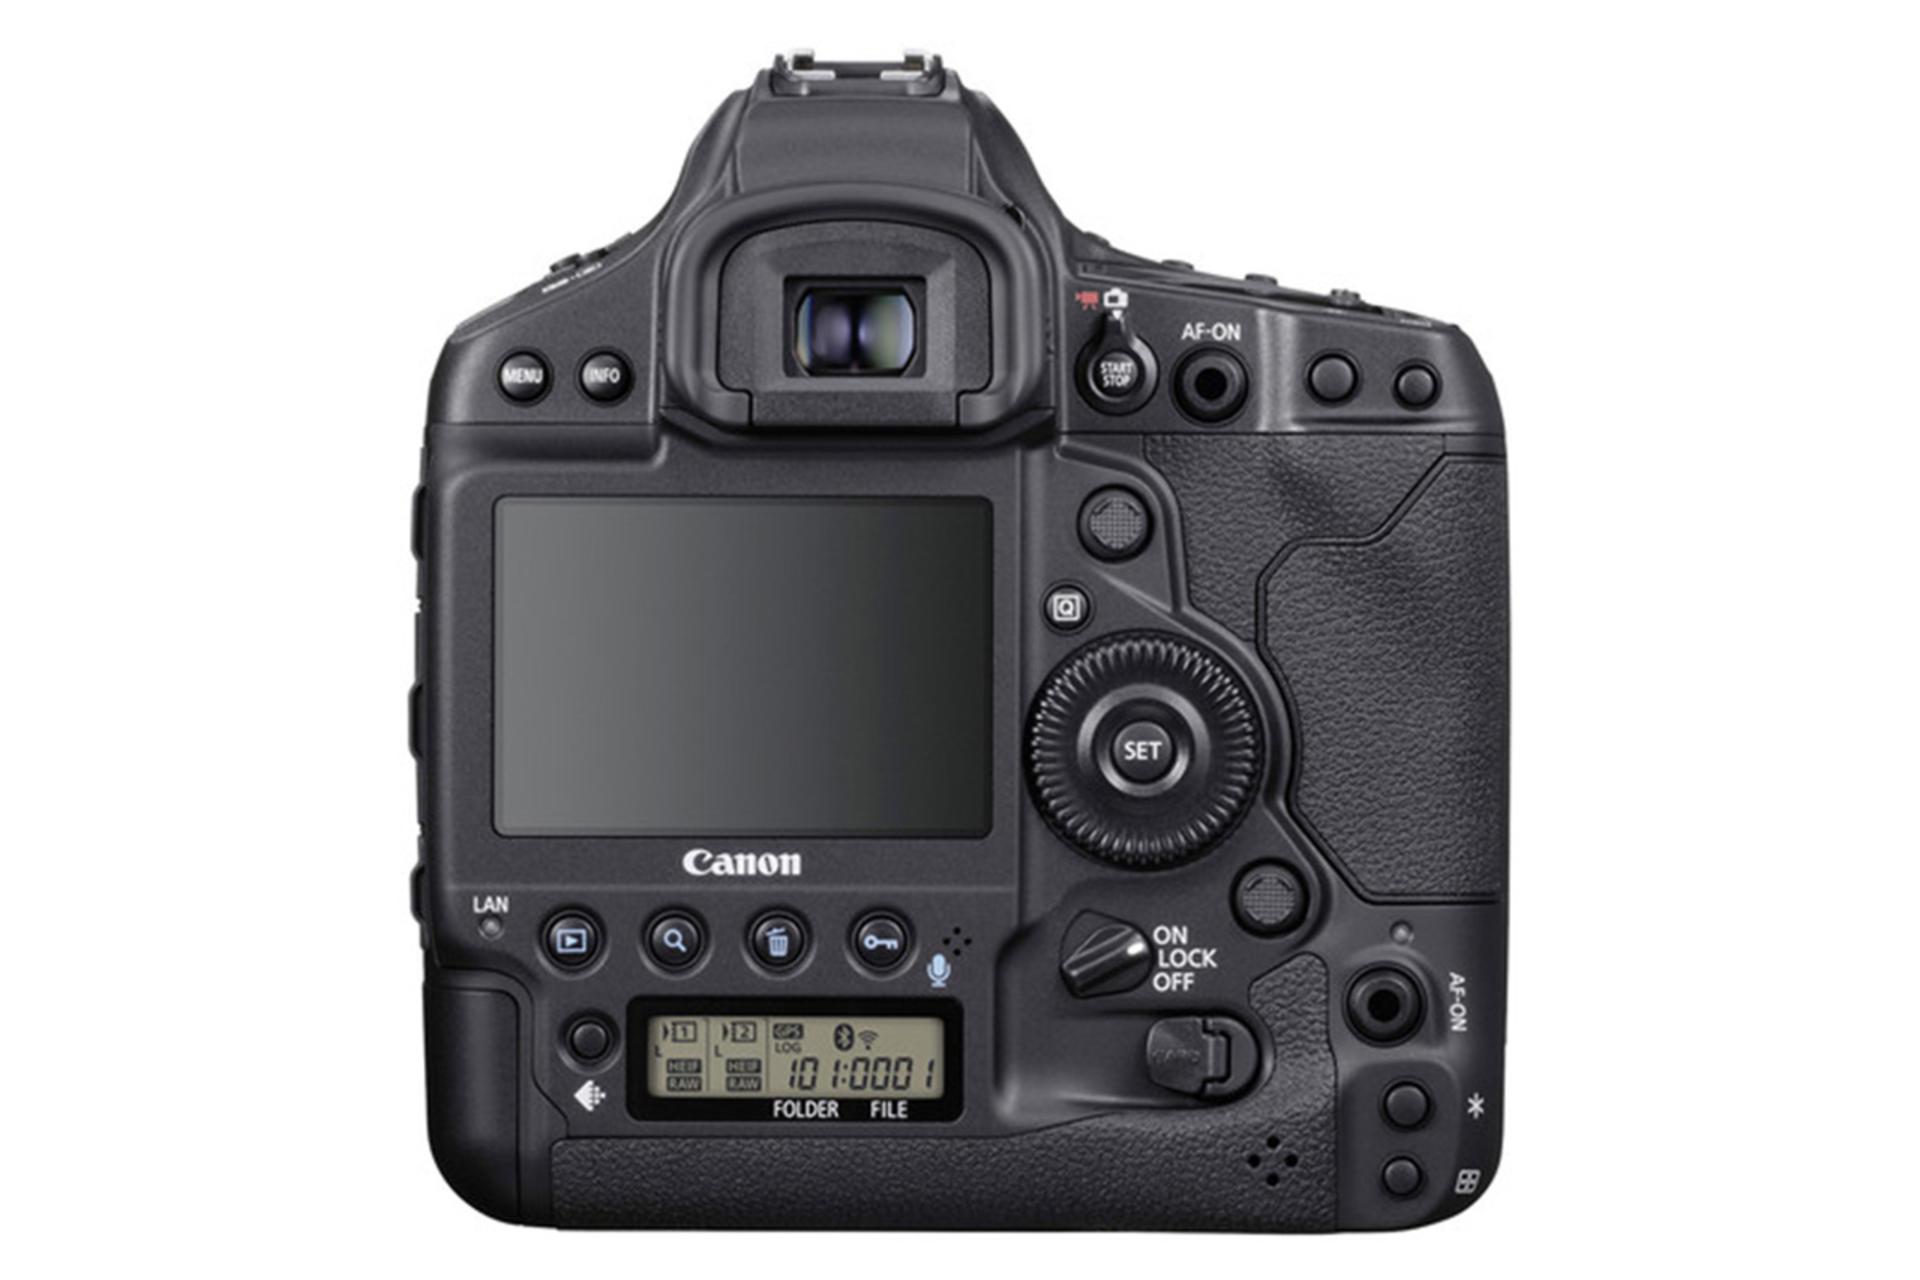  Canon EOS-1D X Mark III / کانن